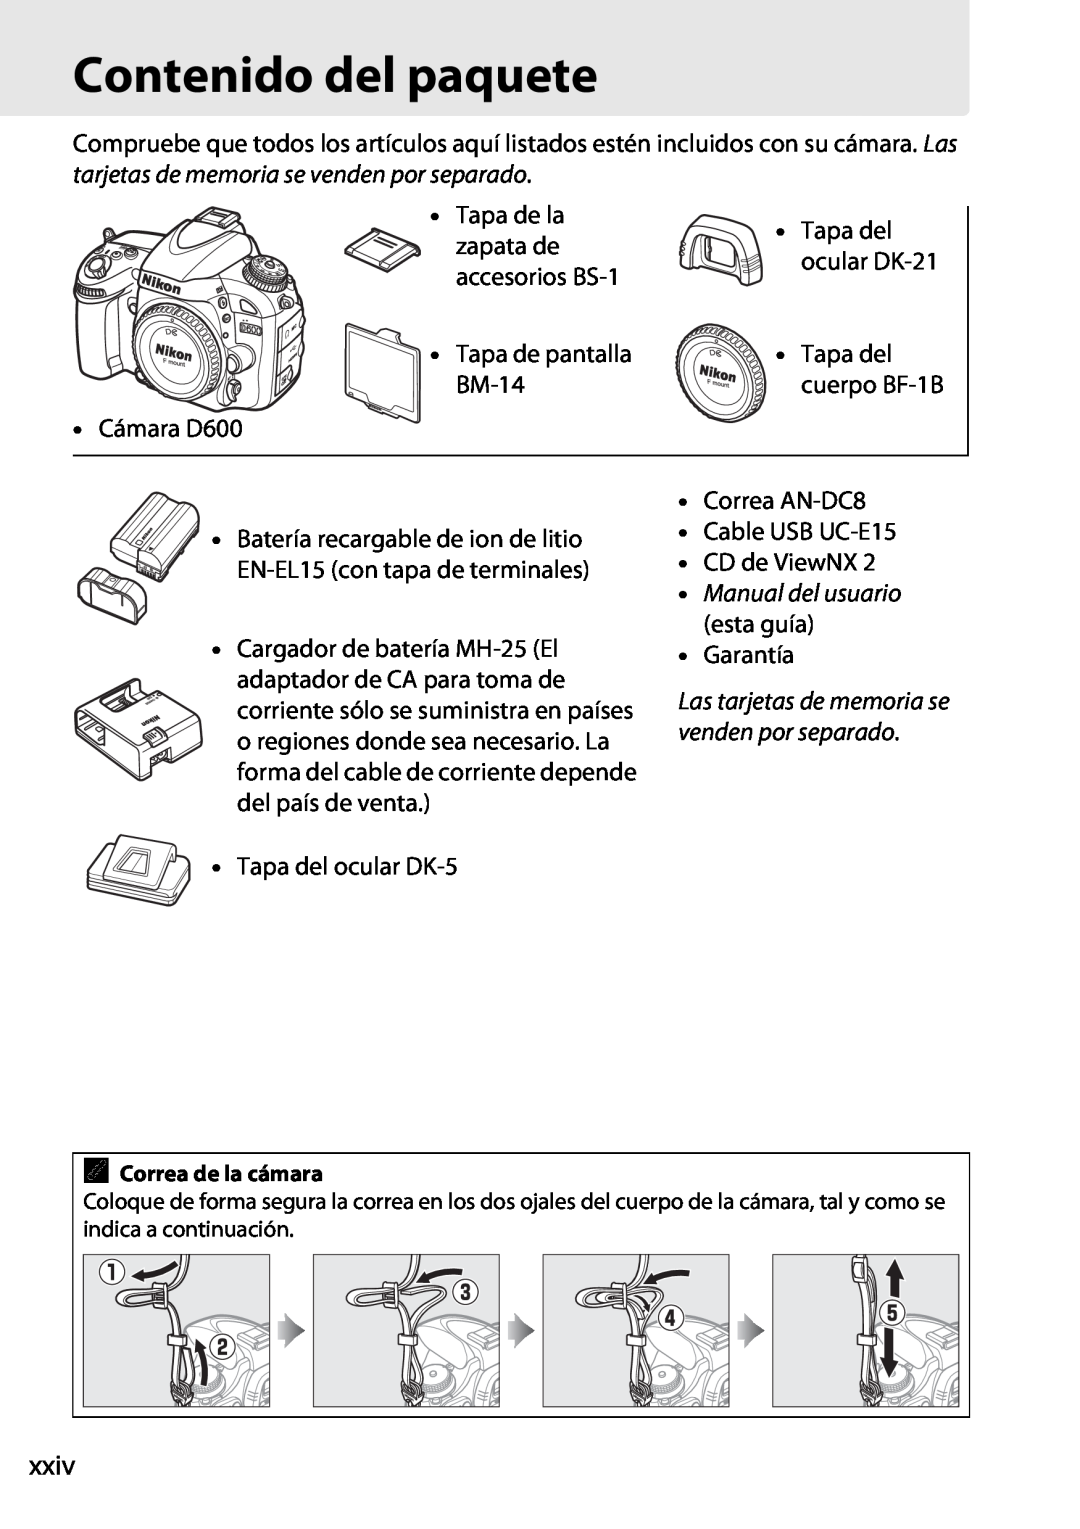 Nikon D600 manual Contenido del paquete, xxiv, Manual del usuario esta guía, Las tarjetas de memoria se venden por separado 